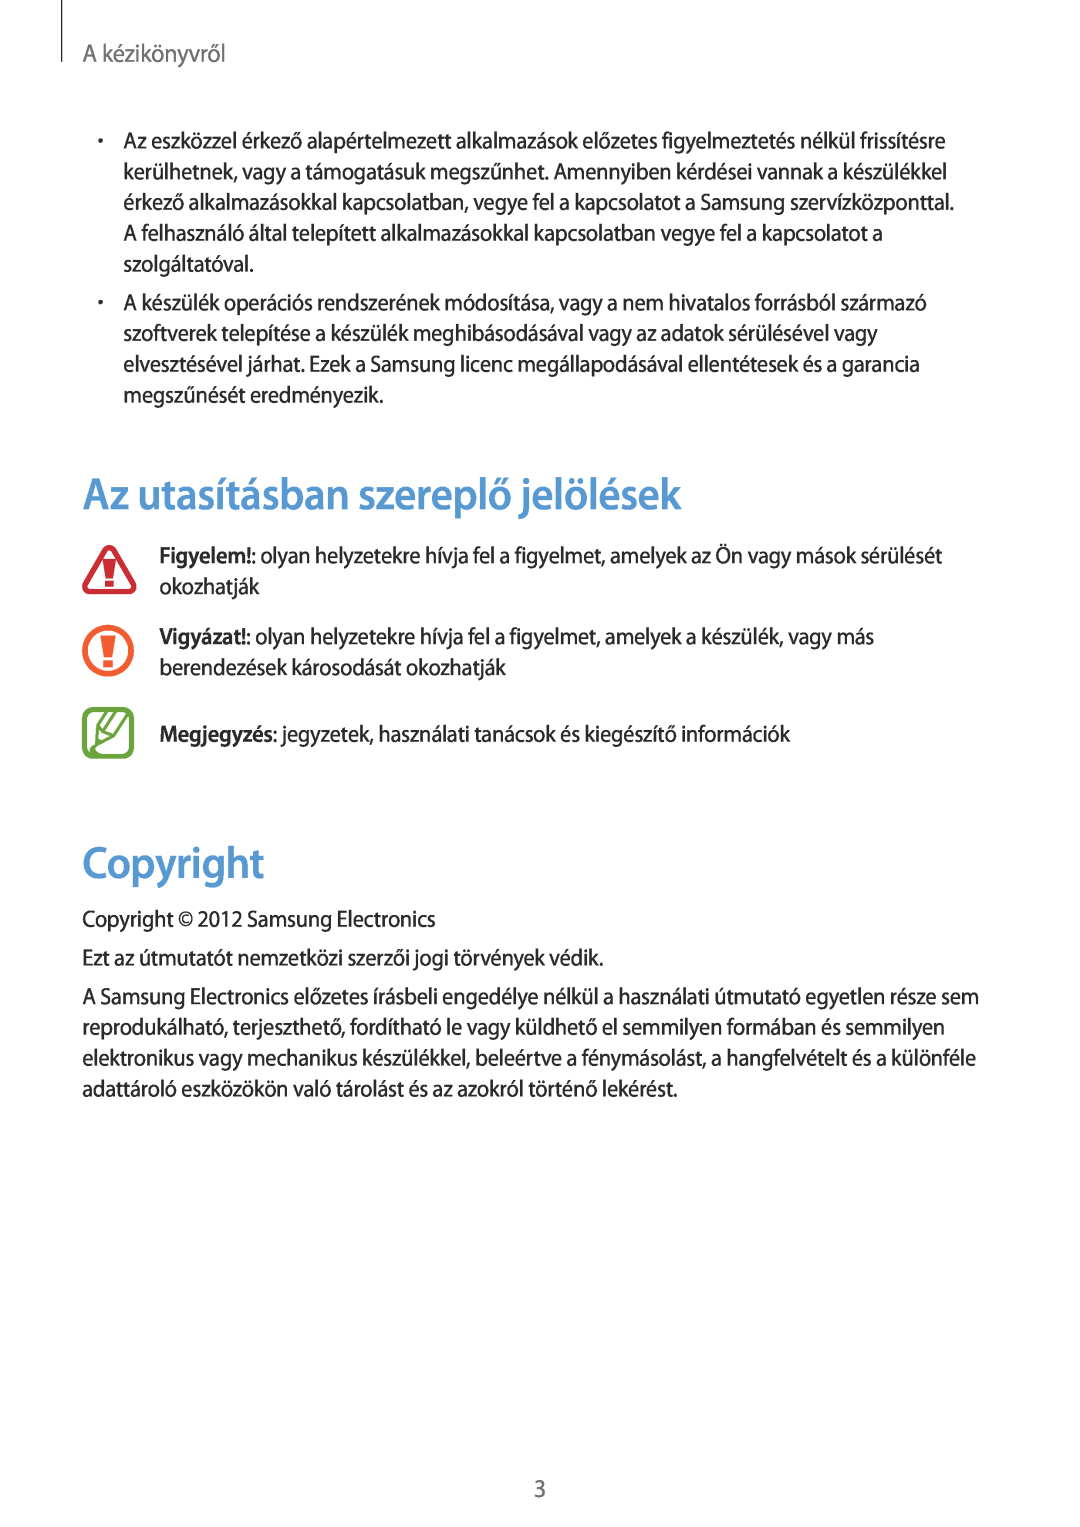 Samsung GT-N7100TADATO, GT-N7100RWDXEO, GT-N7100RWDDBT manual Az utasításban szereplő jelölések, Copyright, A kézikönyvről 